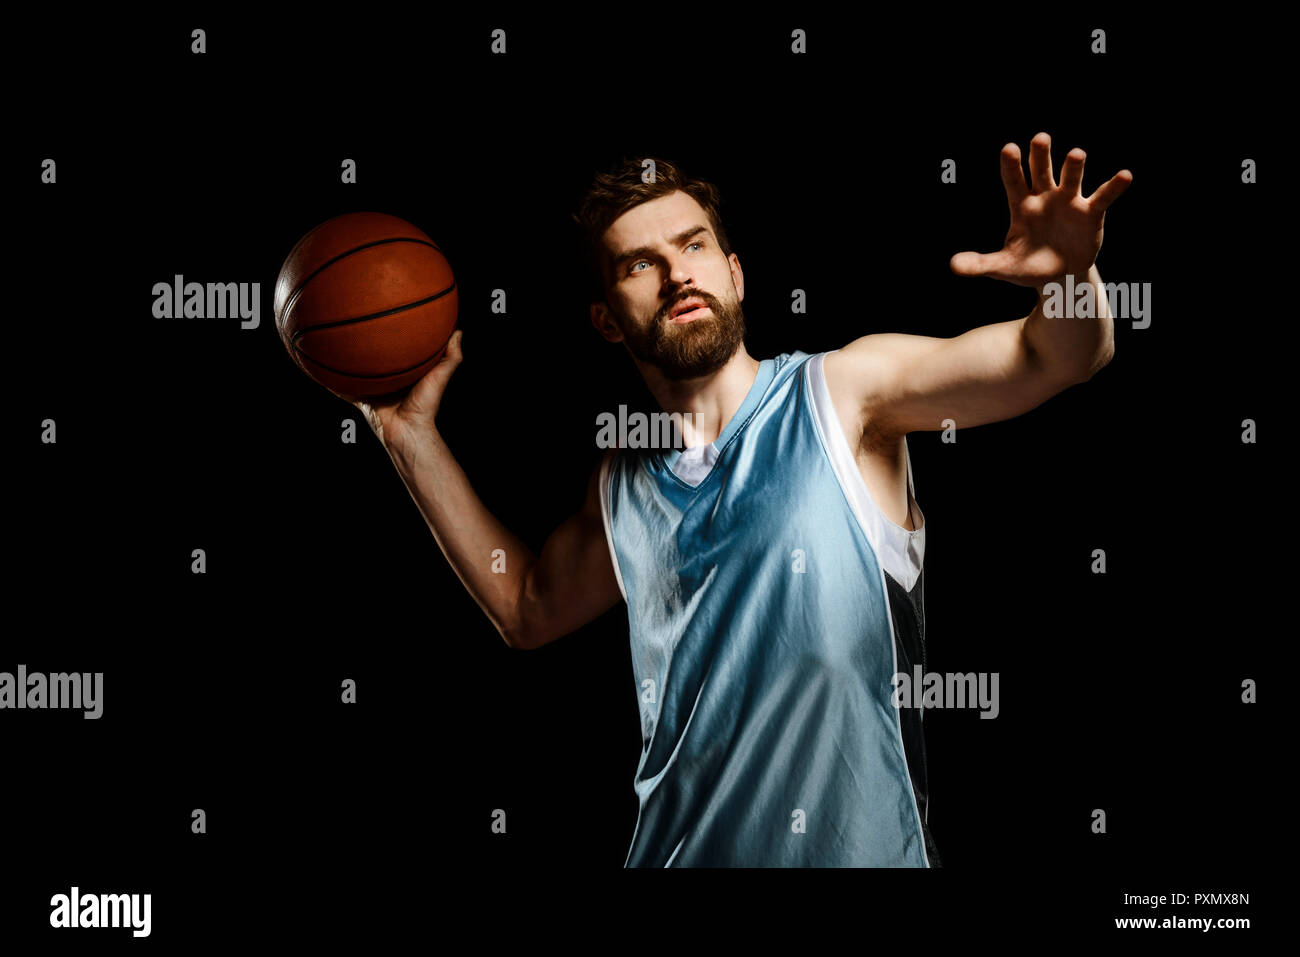 Sportsman jette une basket-ball Banque D'Images